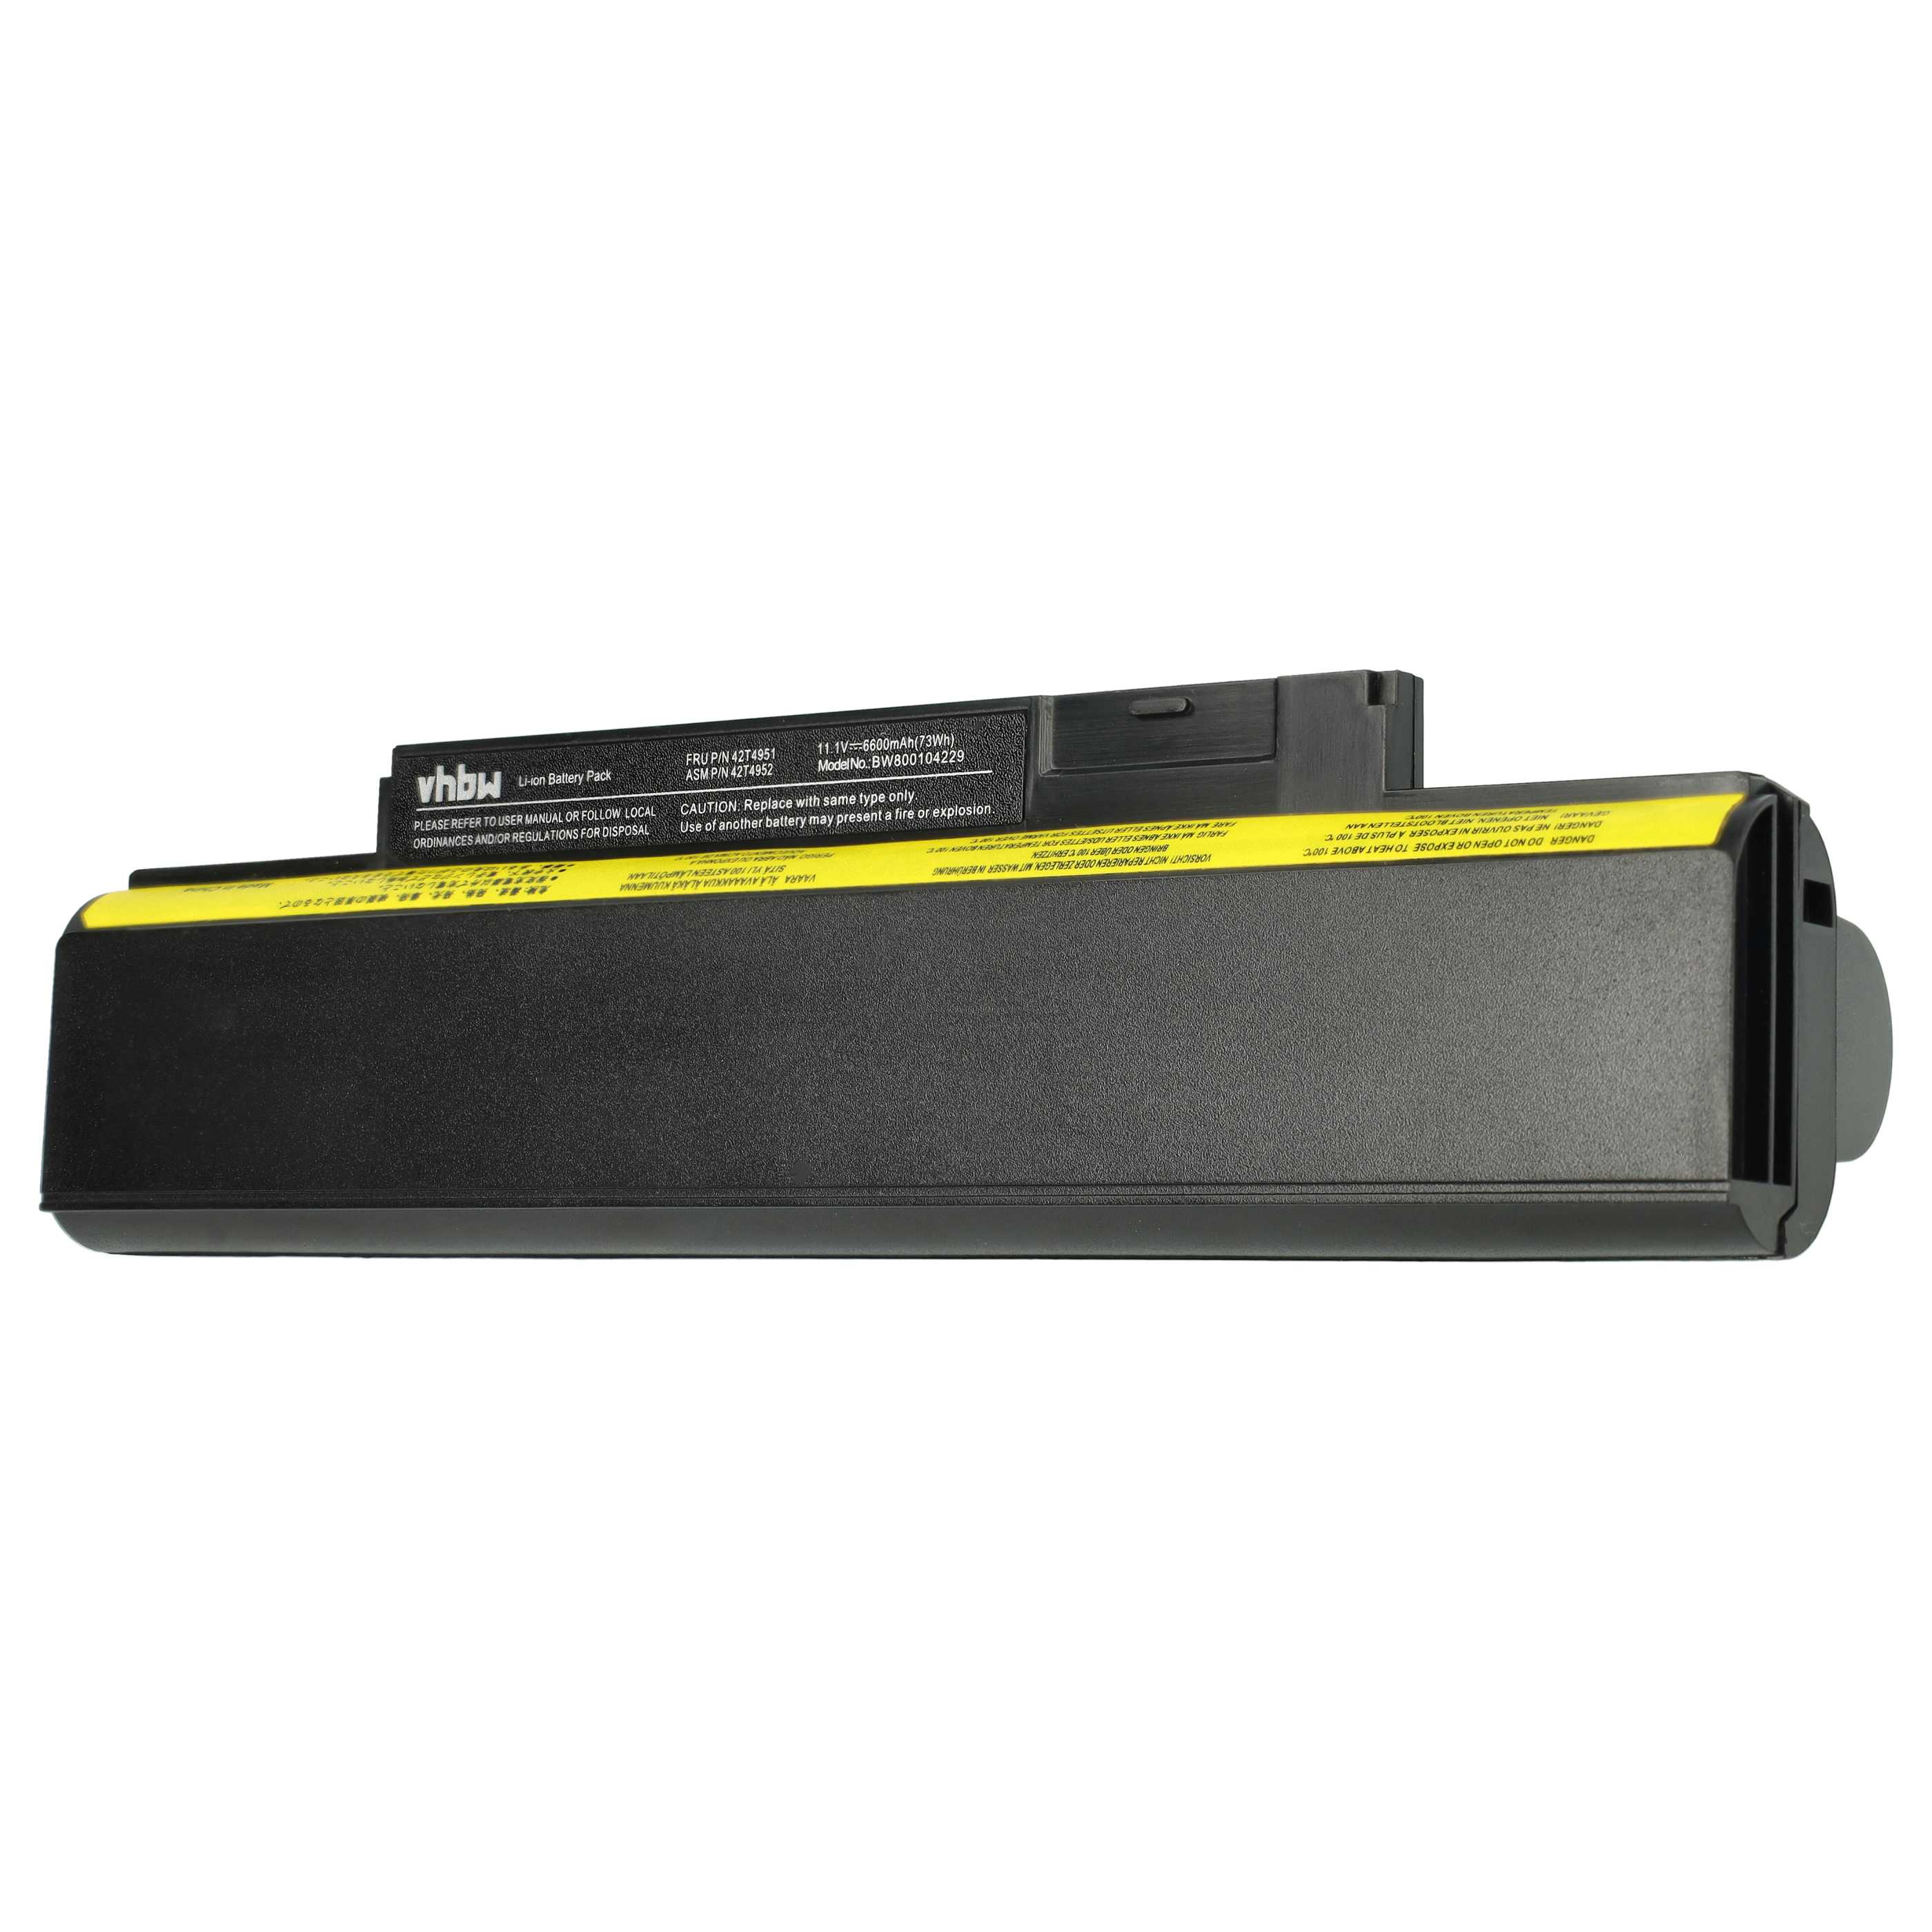 Batterie remplace Lenovo 42T4943, 0A36292, 0A36290 pour ordinateur portable - 6600mAh 11,1V Li-ion, noir